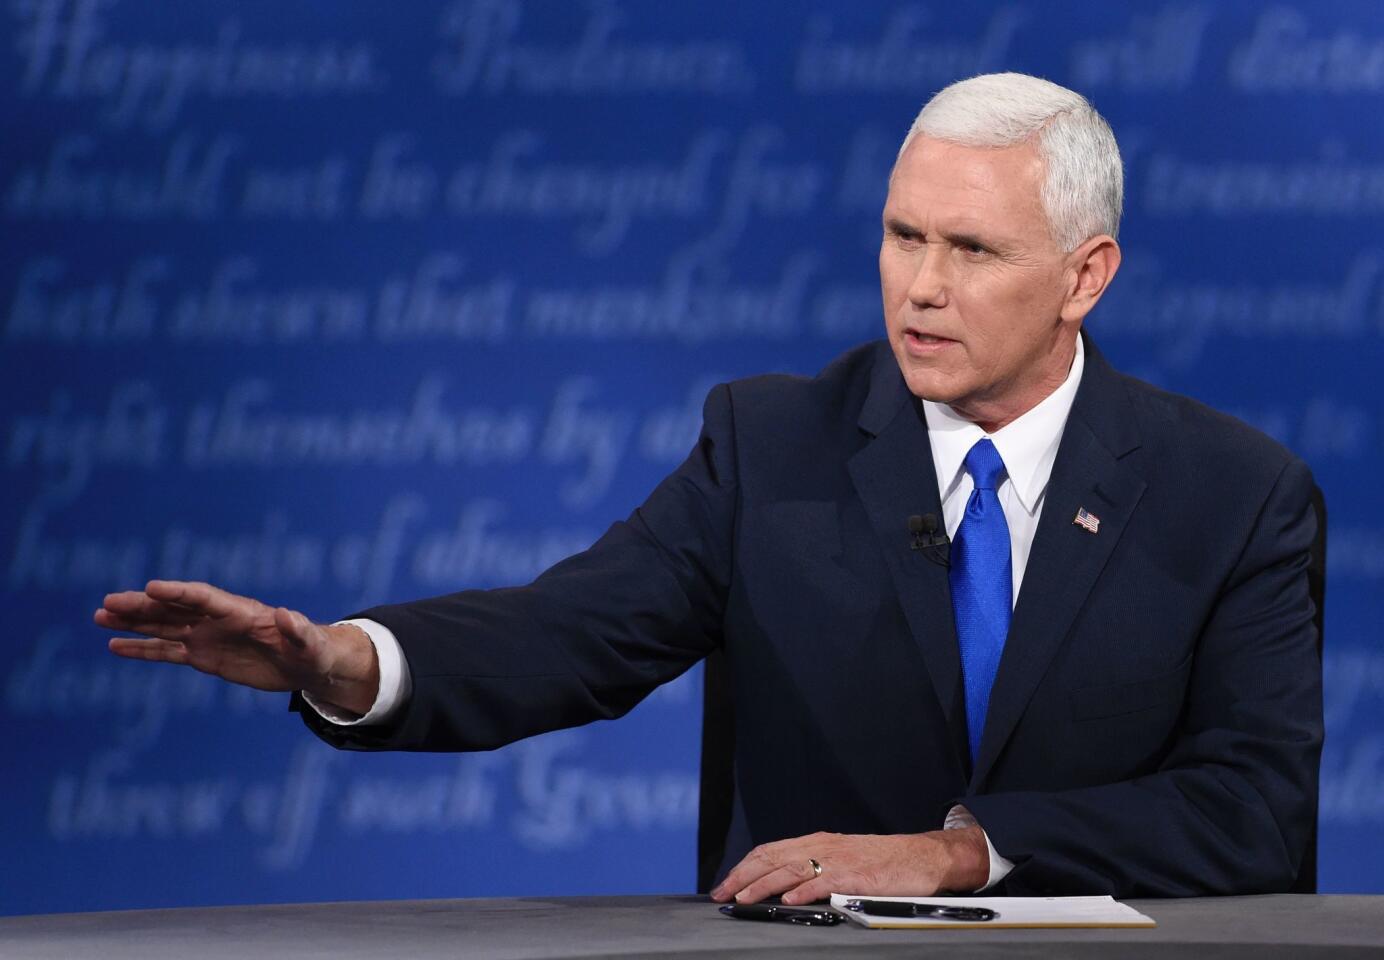 2016 Vice Presidential Debate